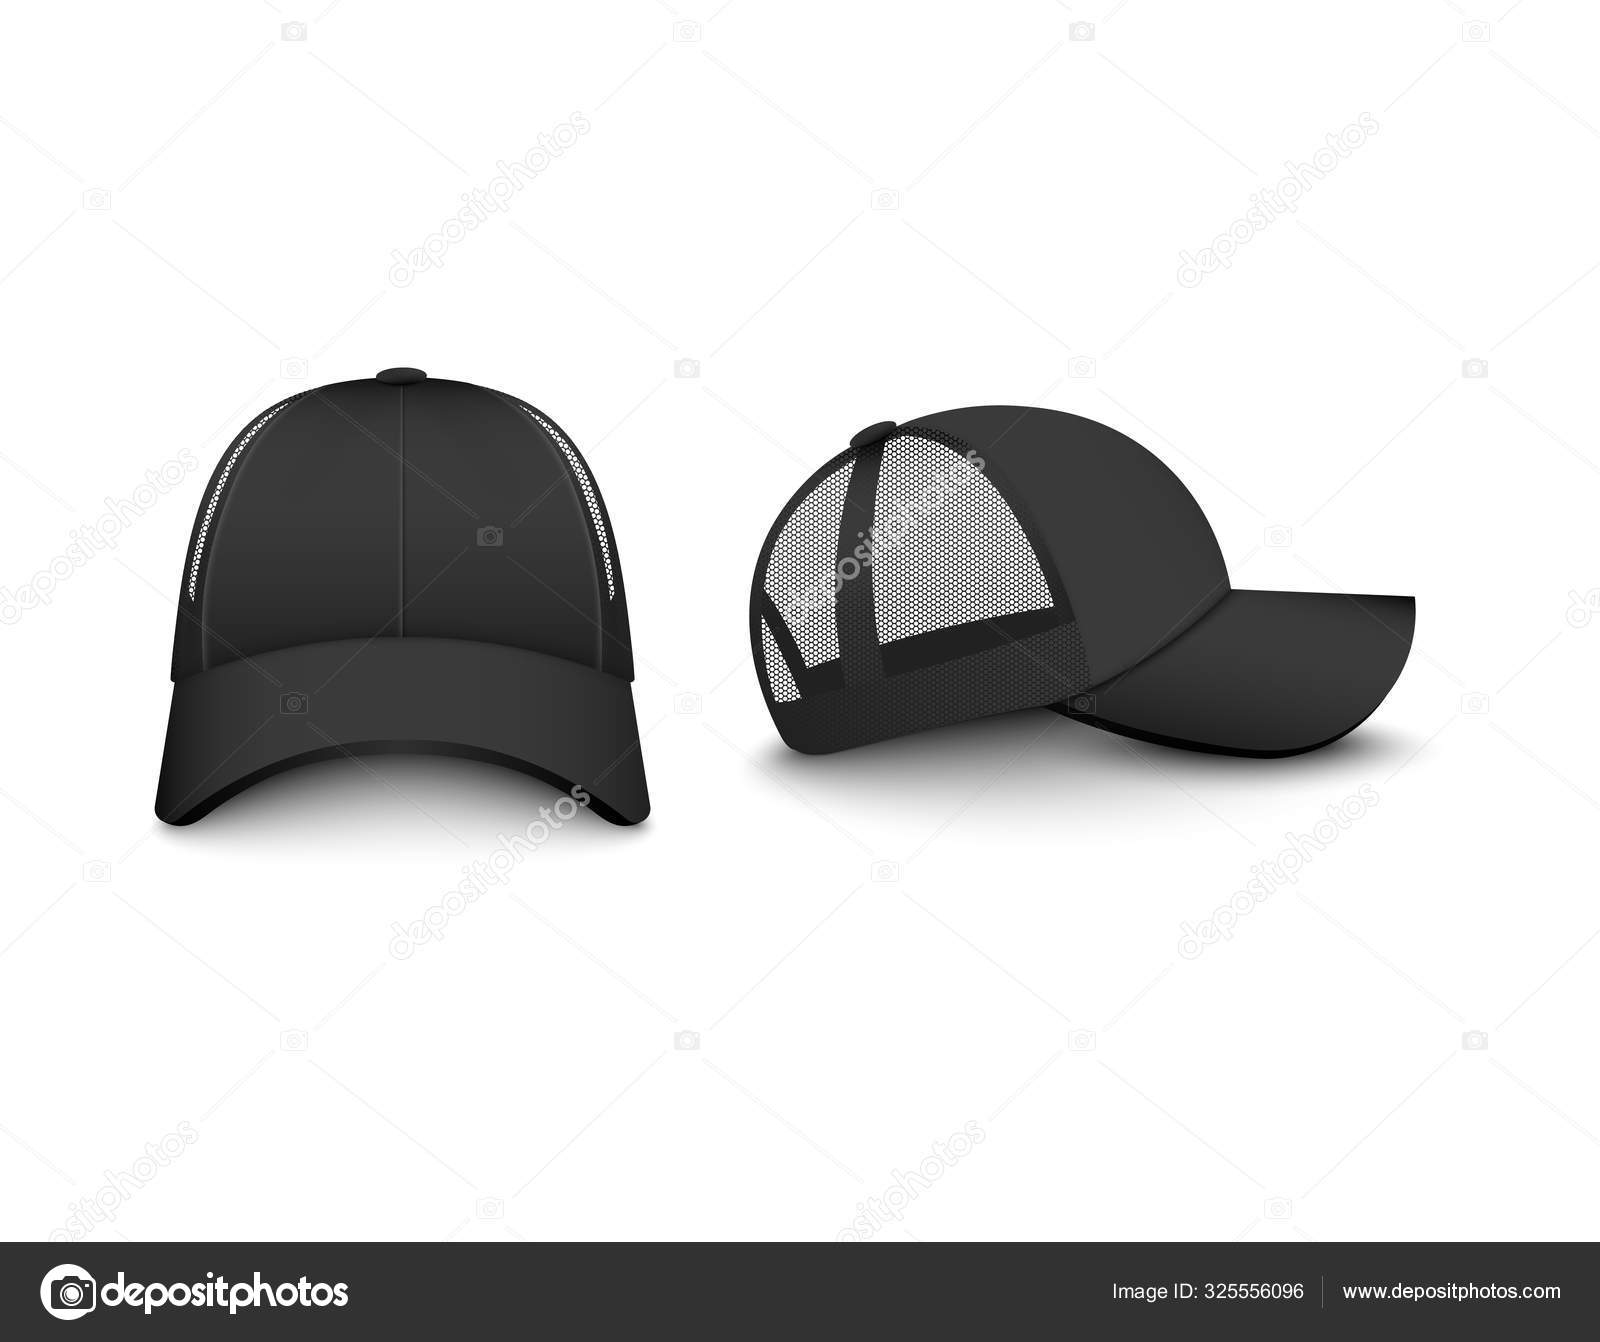 Download 265 Trucker Hat Template Vector Images Free Royalty Free Trucker Hat Template Vectors Depositphotos